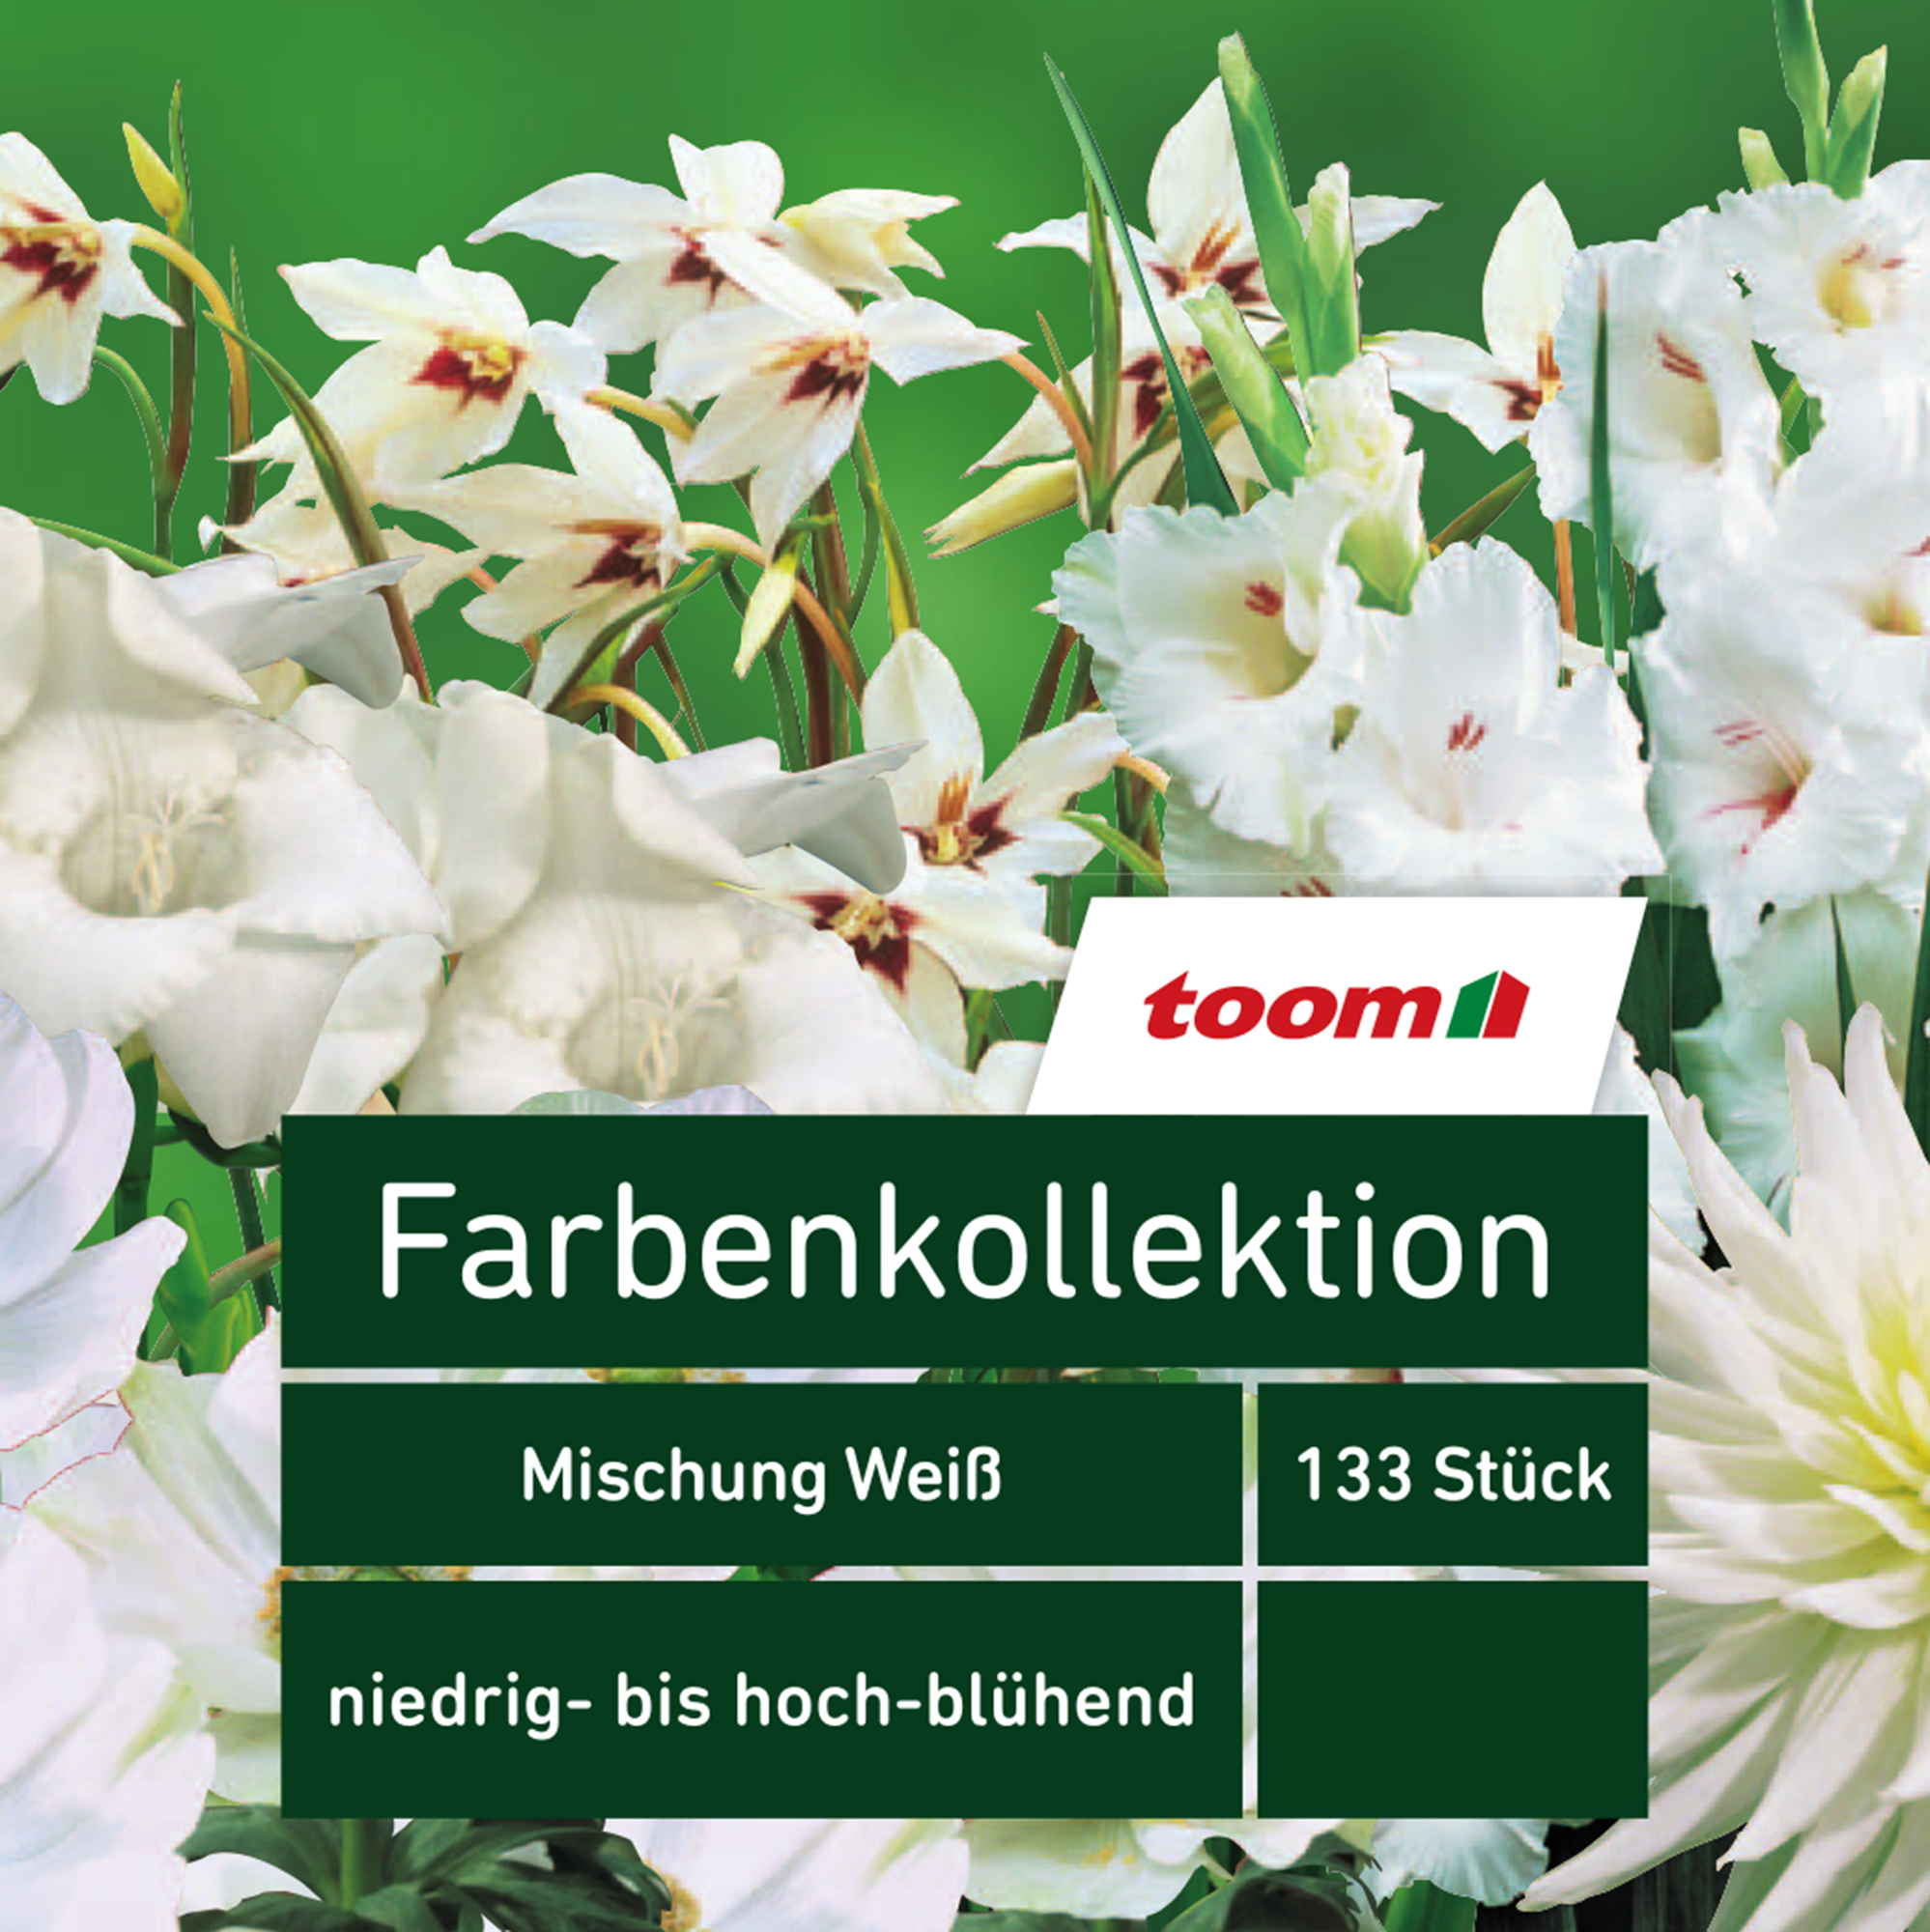 Blumenzwiebeln Farbenkollektion 'Mischung Weiß' 133 Stück + product picture